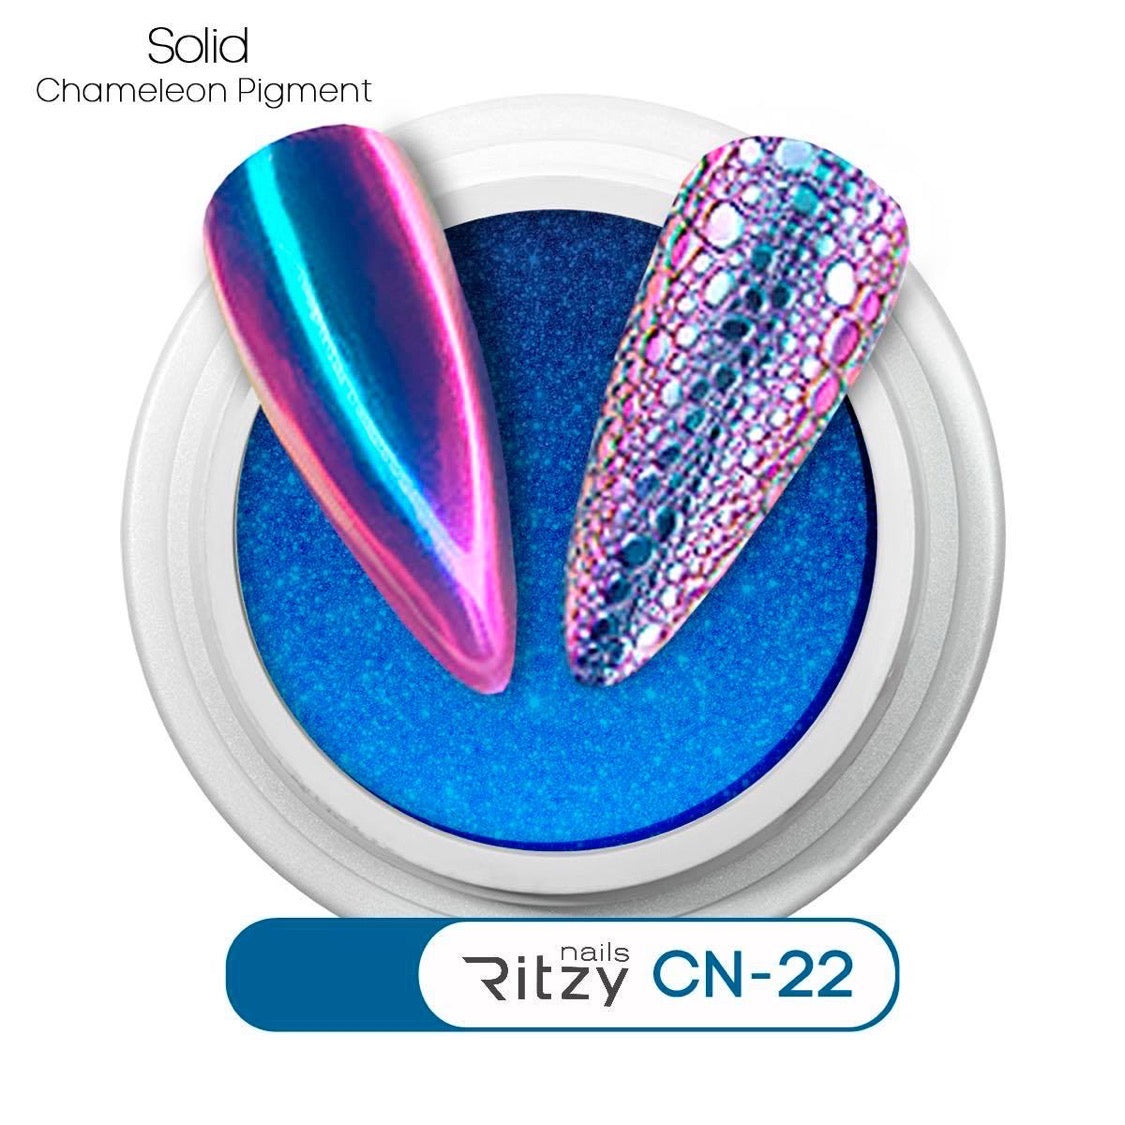 Chameleon pigment CN-22